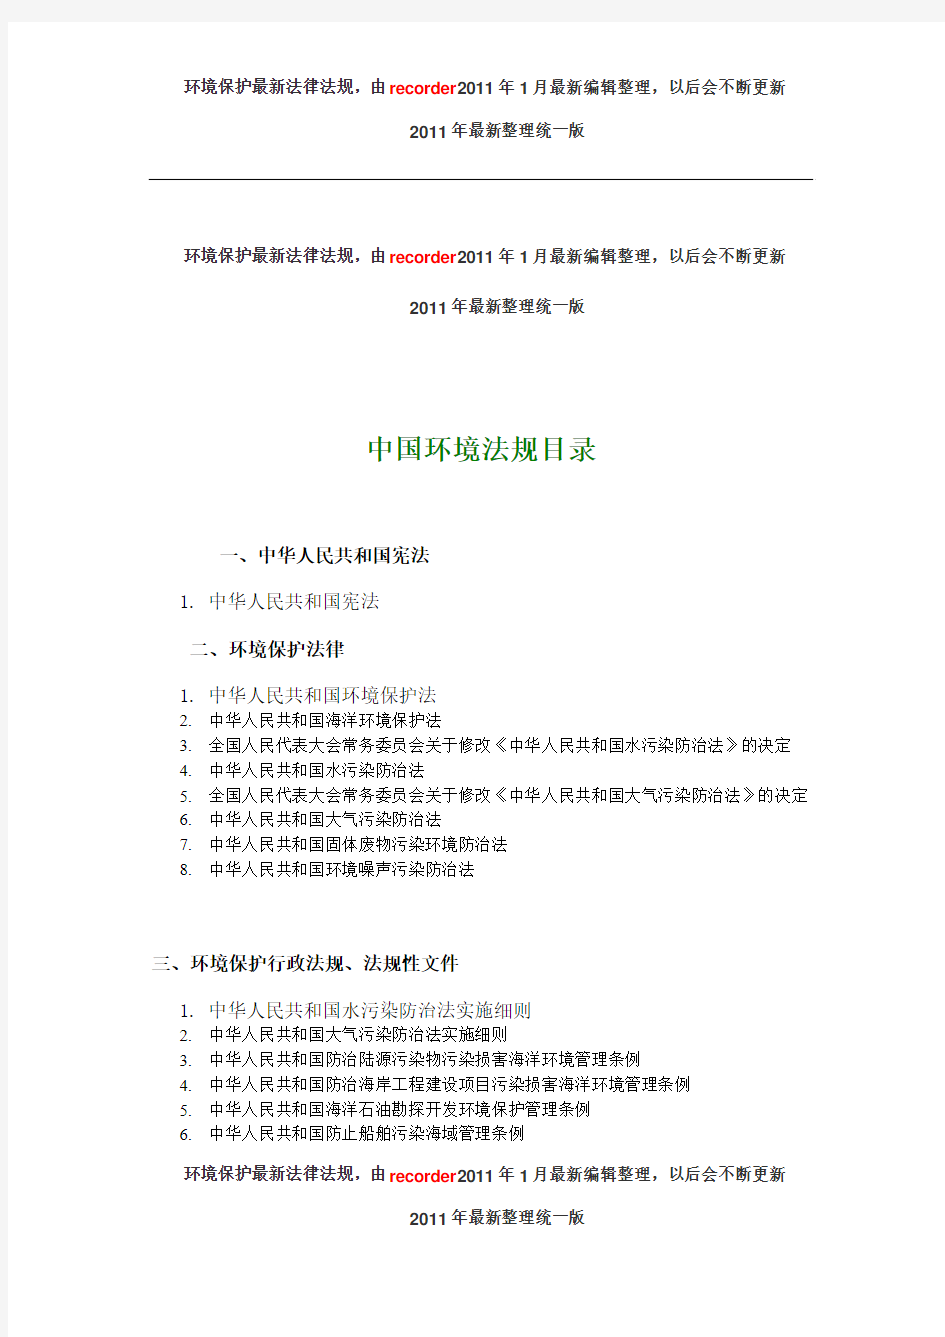 中国环境法规目录全-2011年最新整理统一版